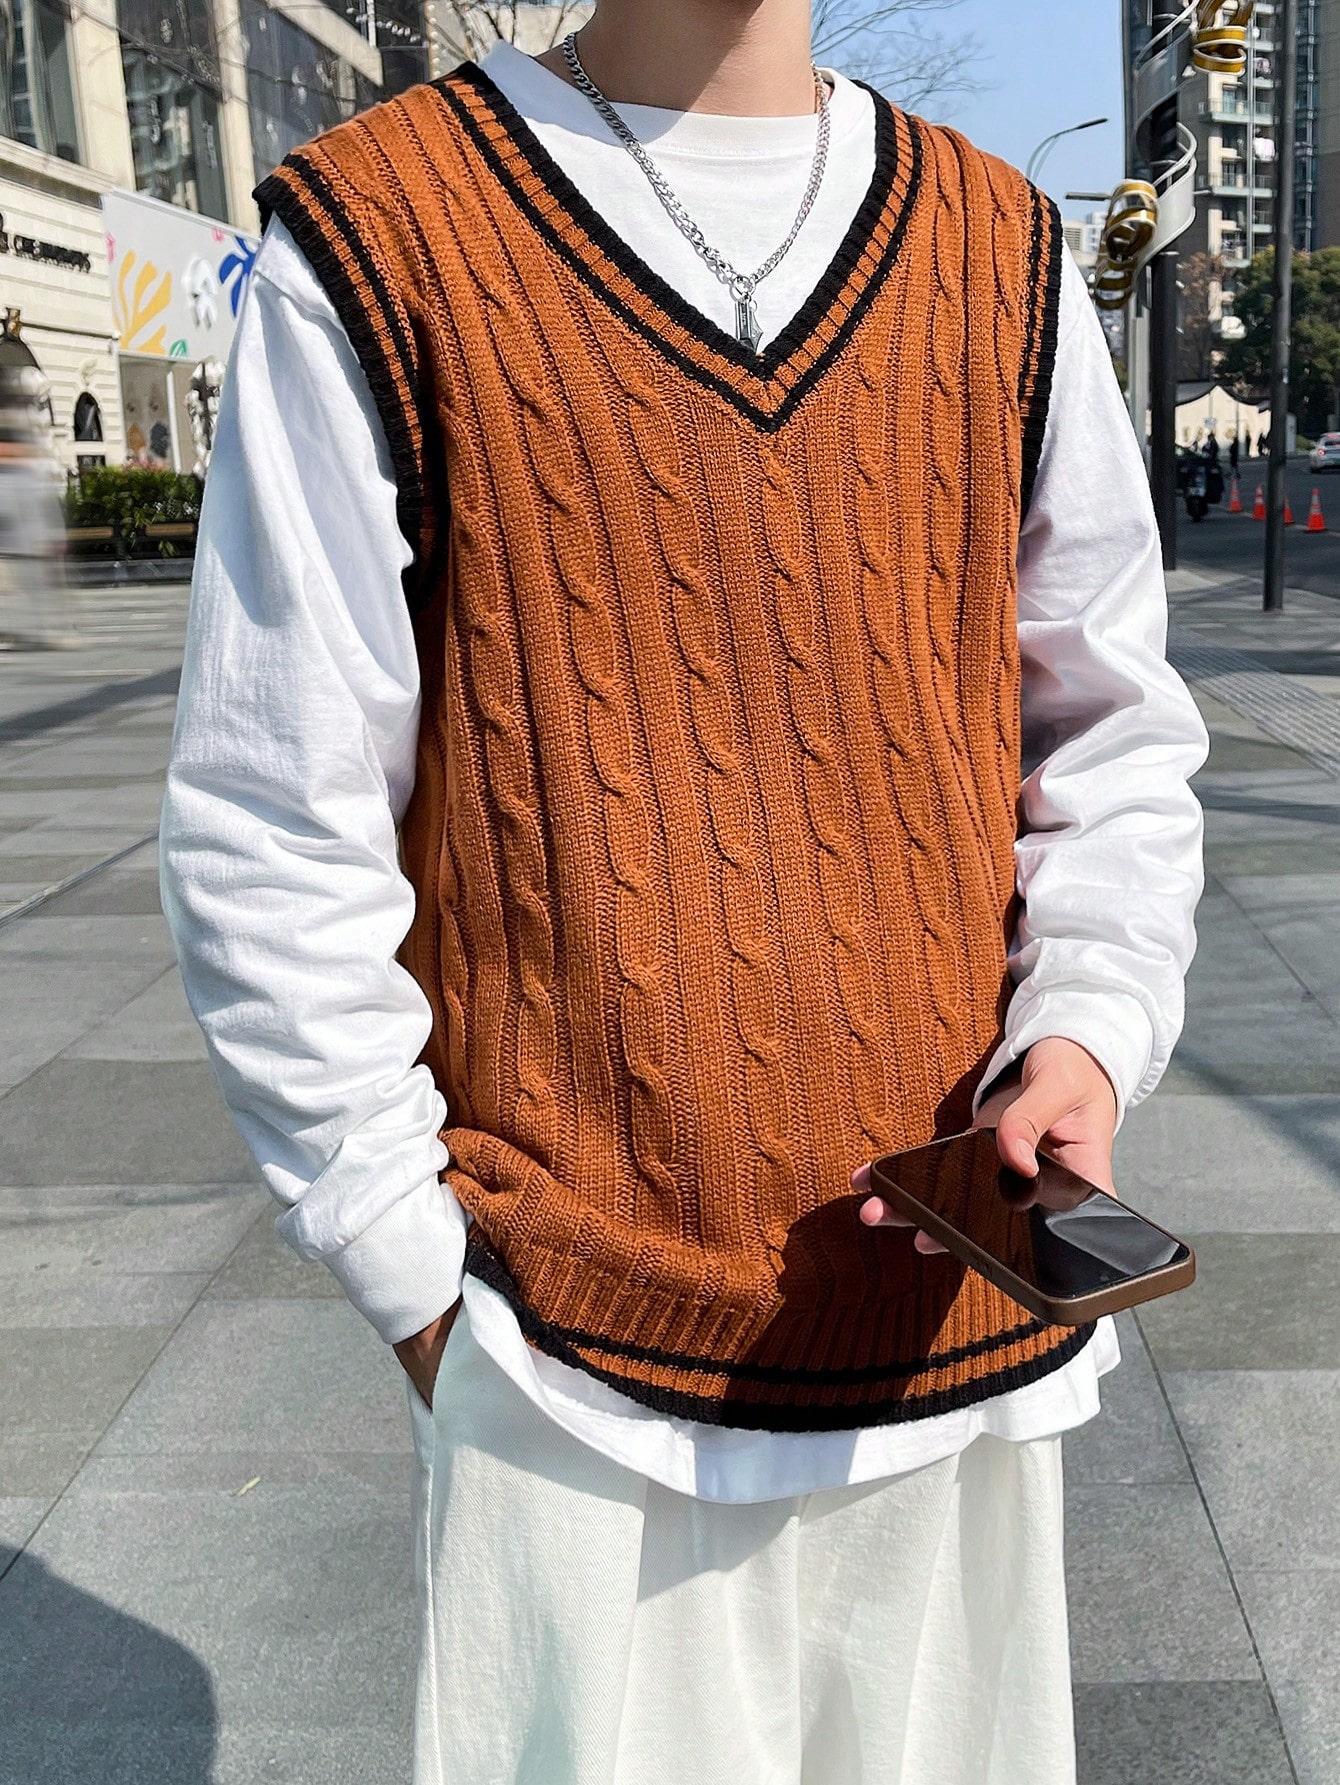 Мужской свитер в полоску с v-образным вырезом Manfinity Sporsity, кофейный коричневый мужской трикотажный свитер с v образным вырезом длинным рукавом